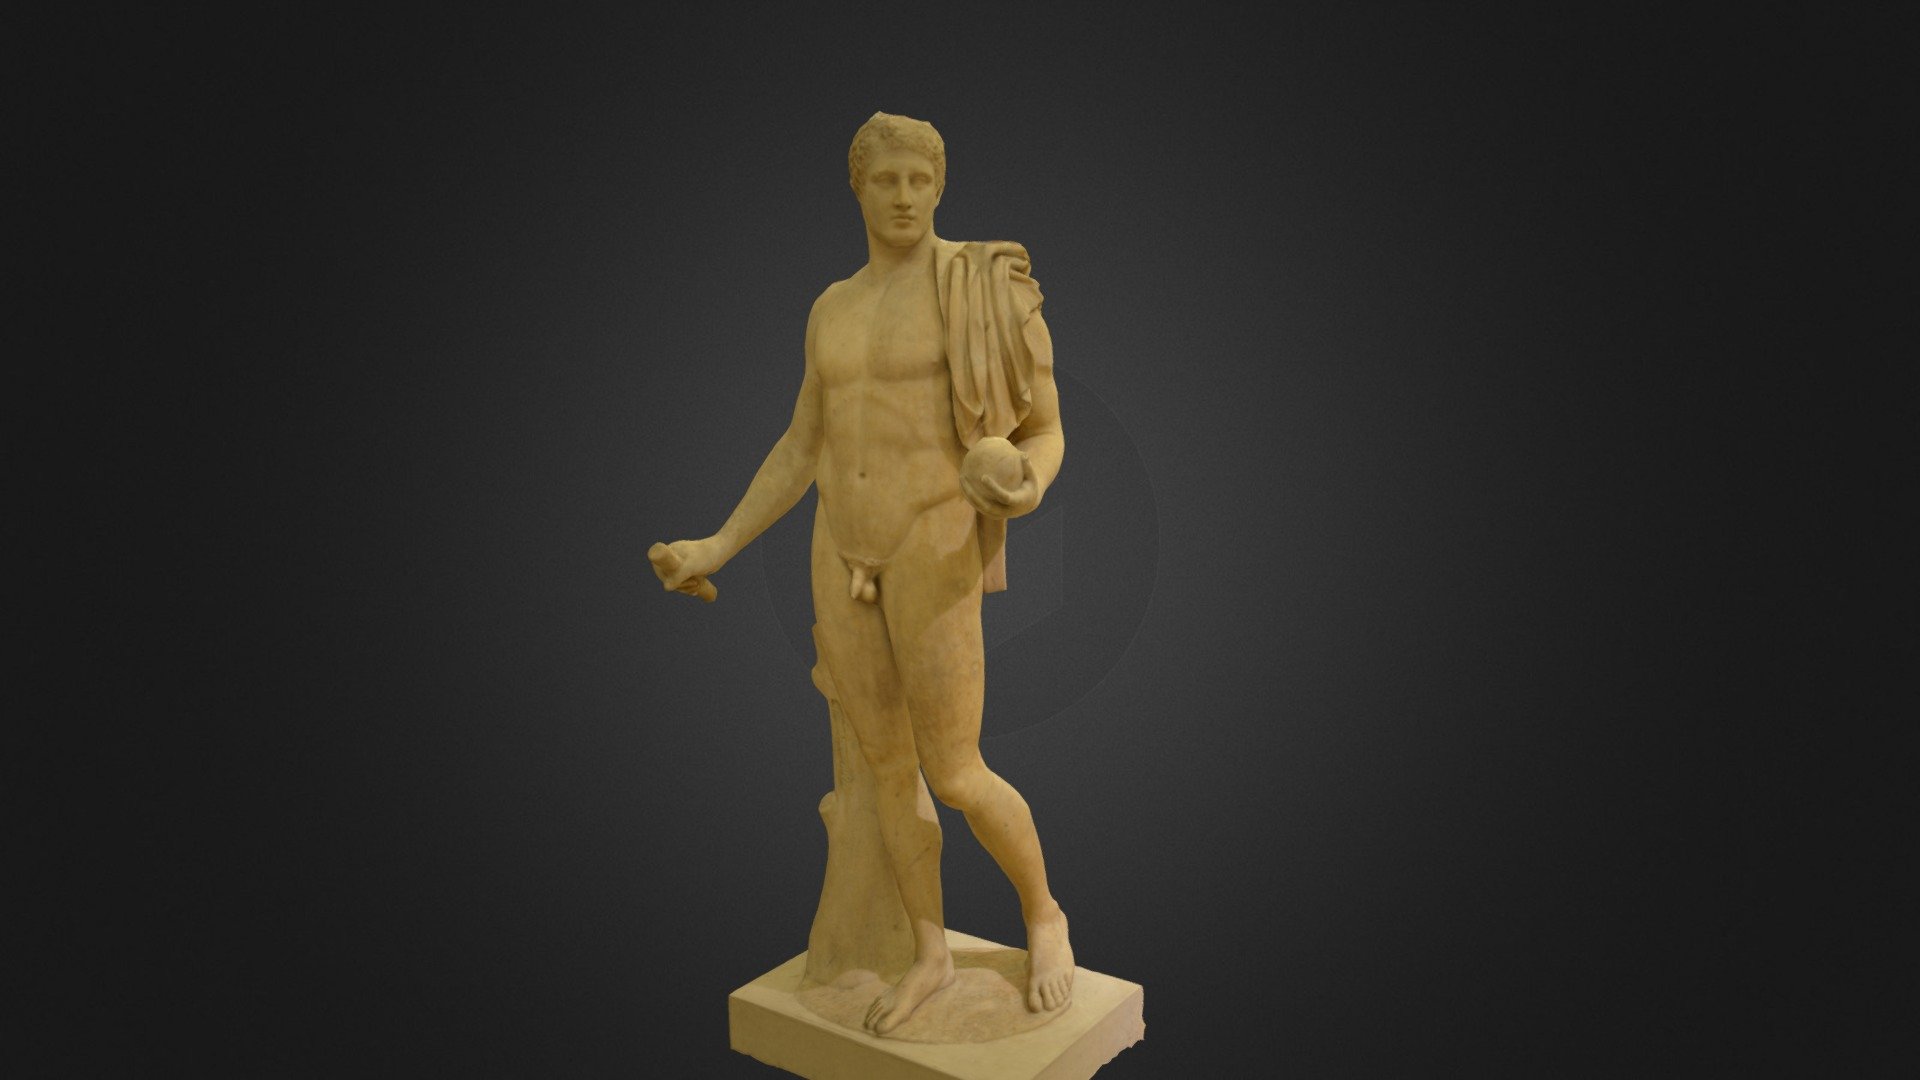 Greek Classical Sculpture (430-370 BC)

3D Scan and optimization - The Male Nude - Low Poly - Buy Royalty Free 3D model by Grégoire Desrousseaux (@g.desrx) 3d model